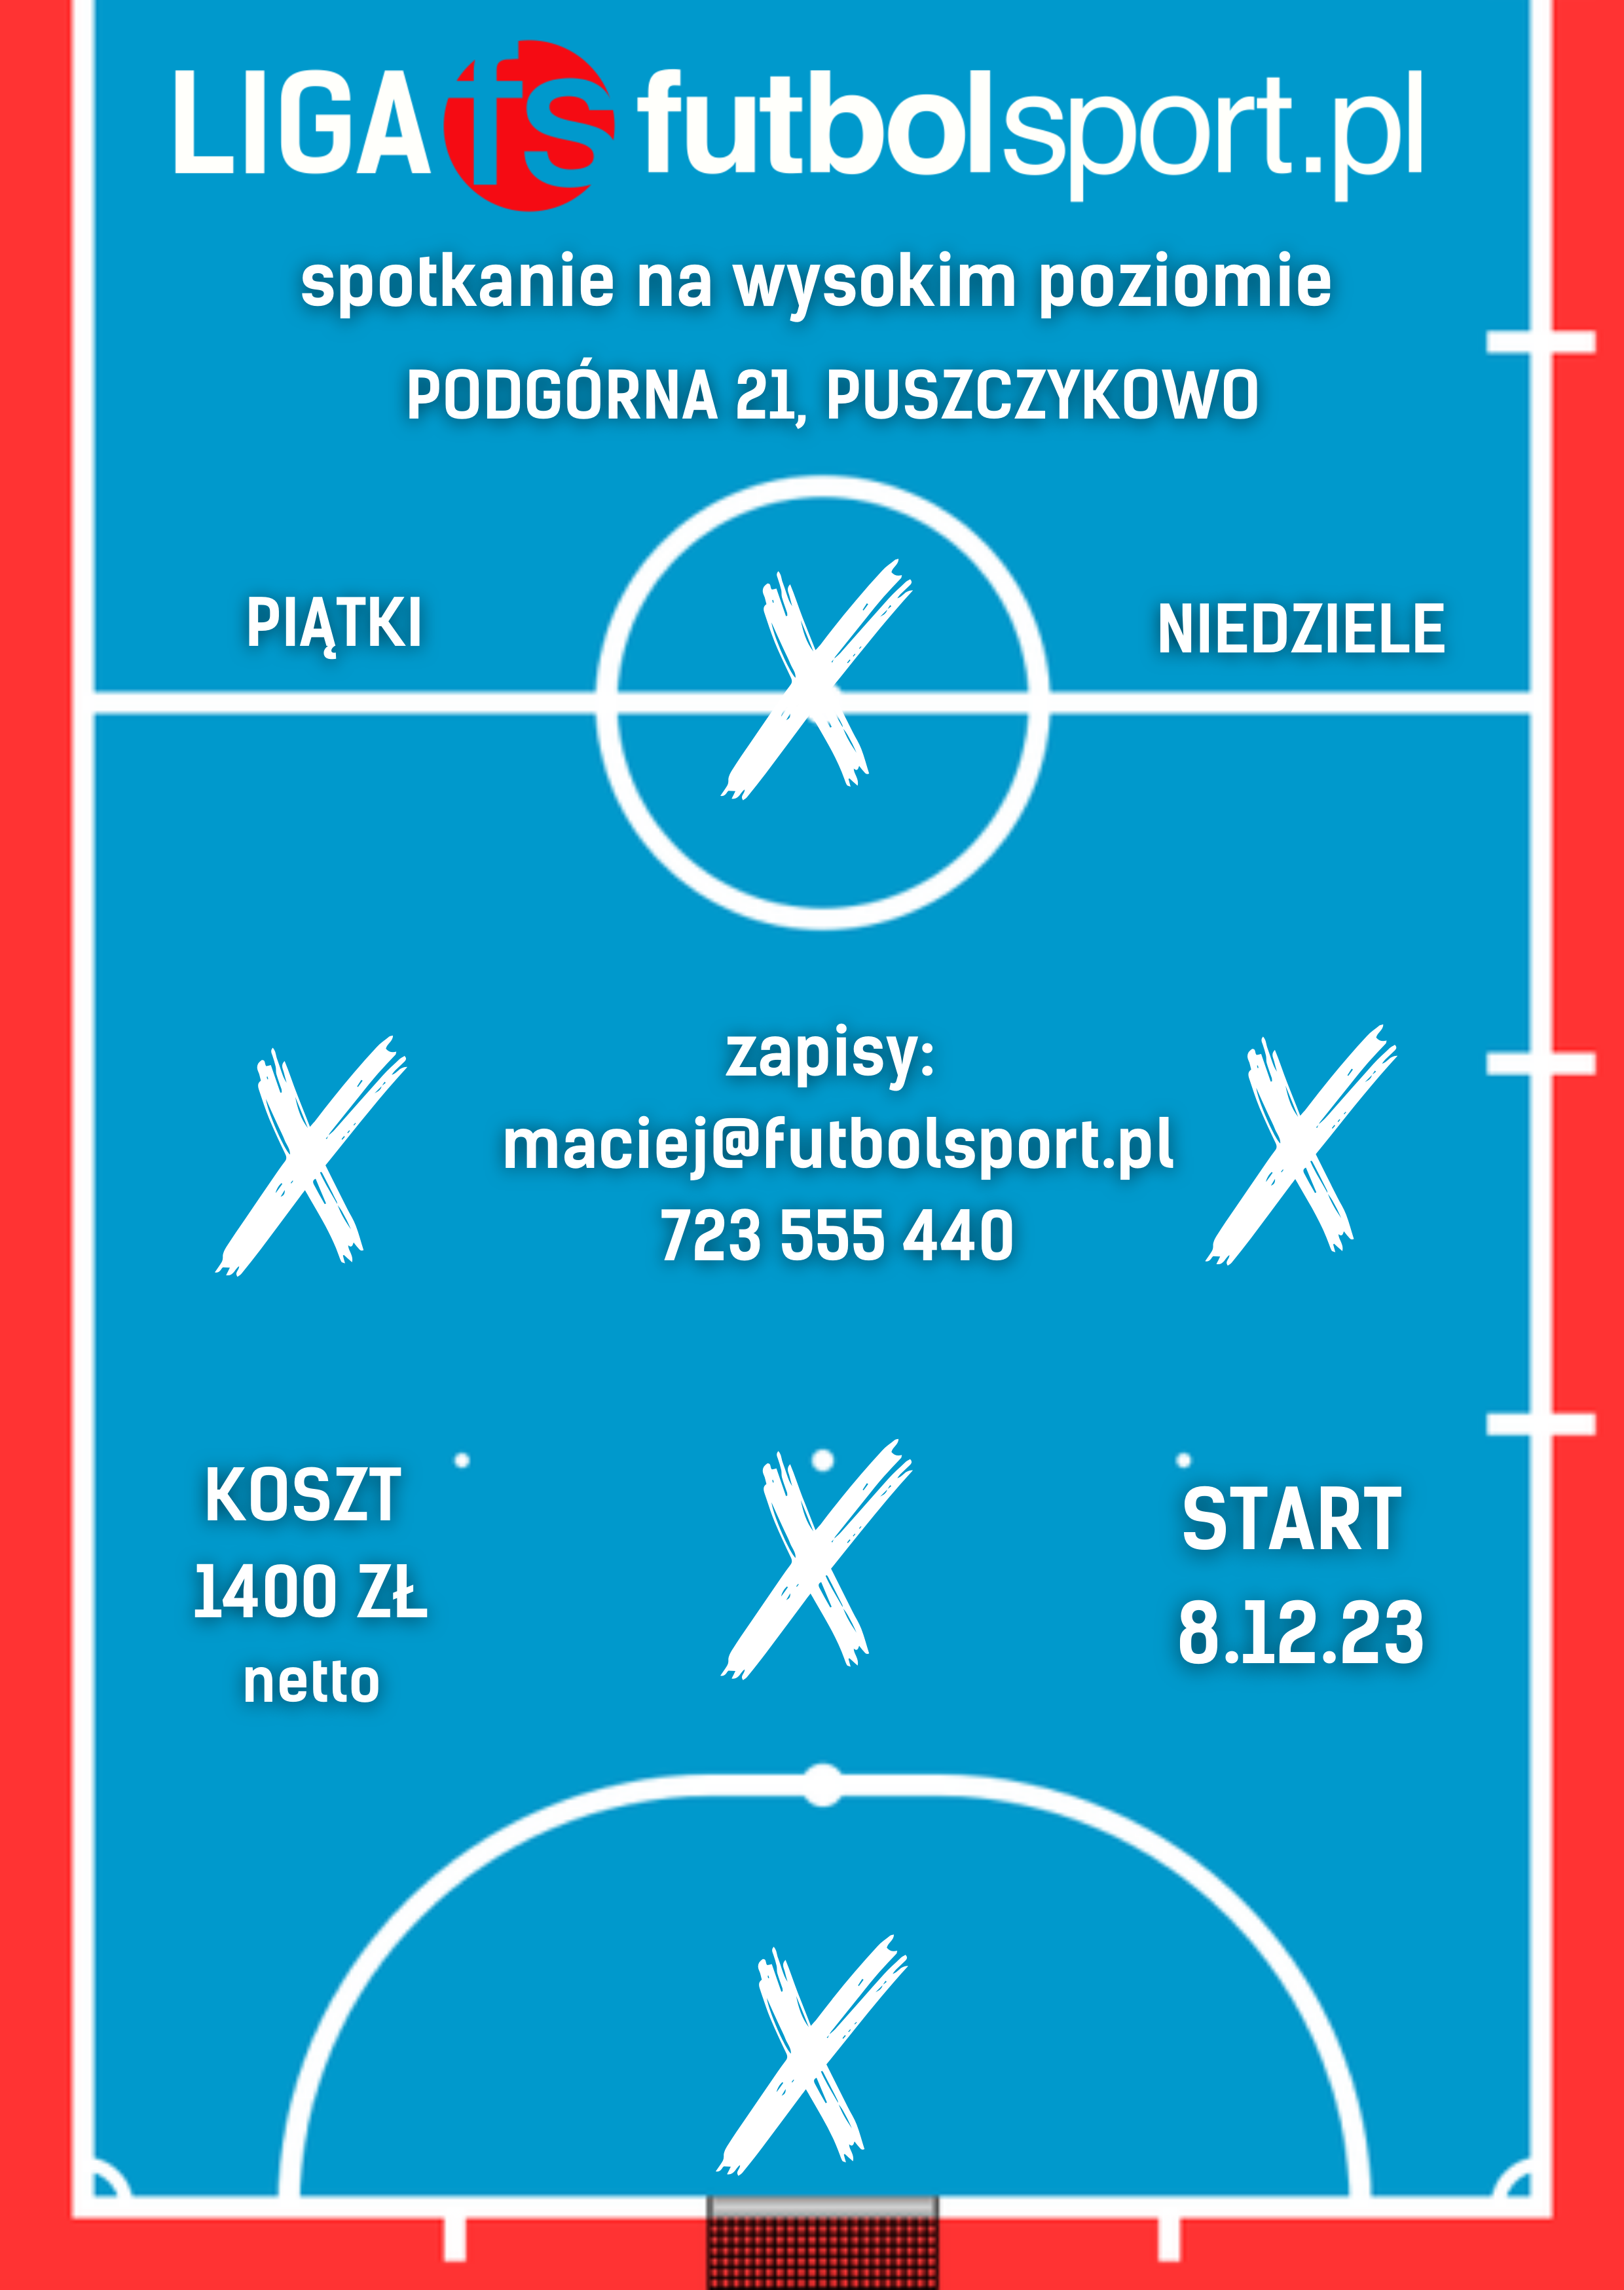 13 grudnia startuje liga halowa futbolsport.pl